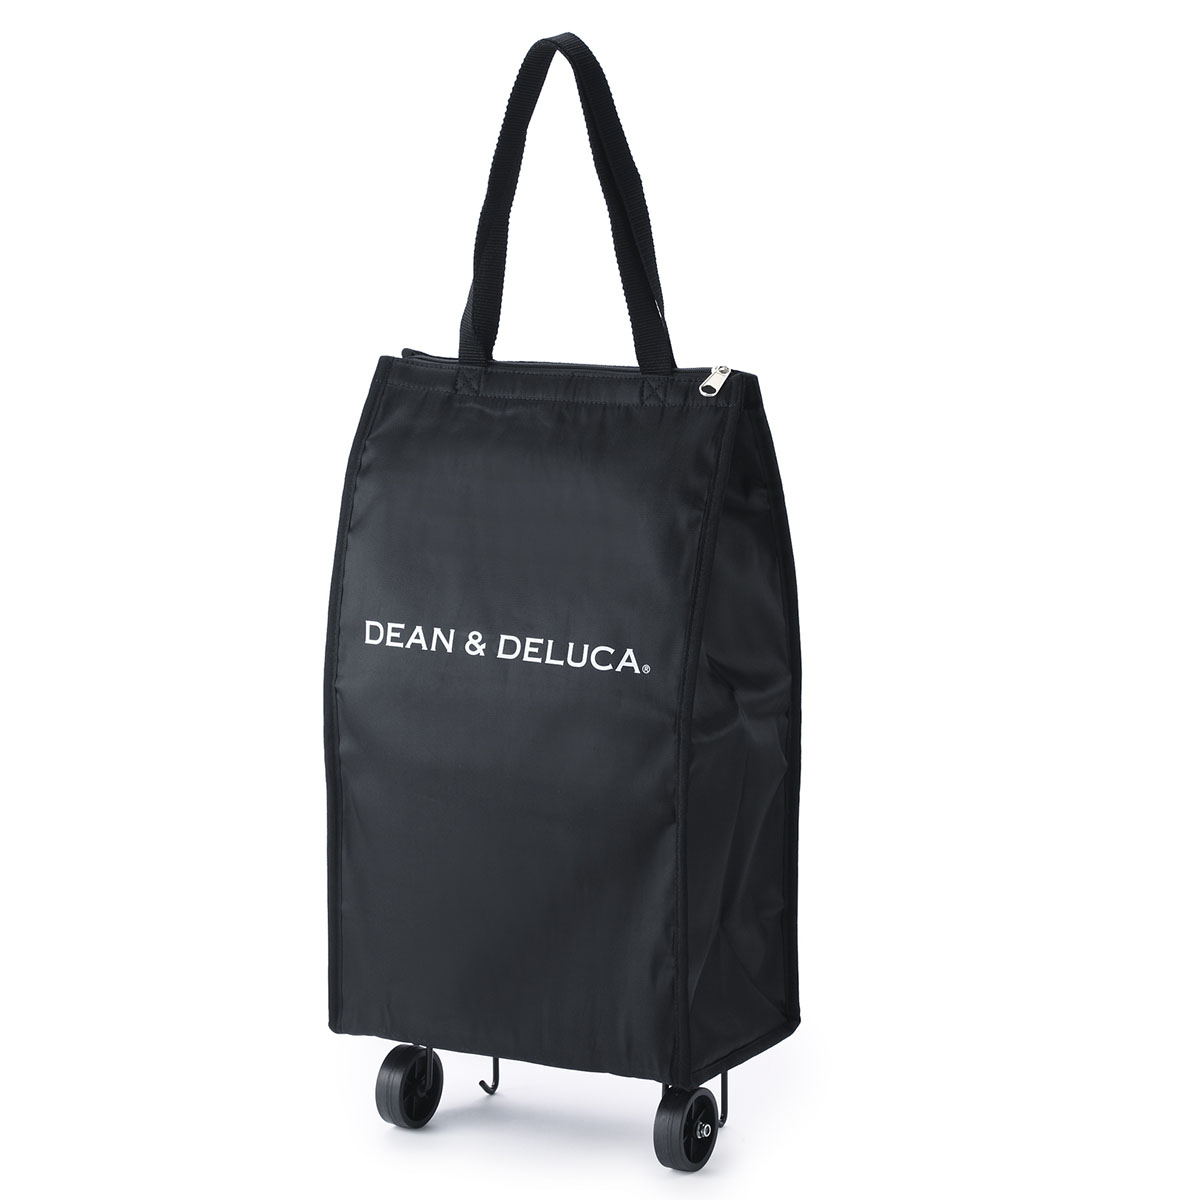 DEAN & DELUCA ショッピングカート ブラック